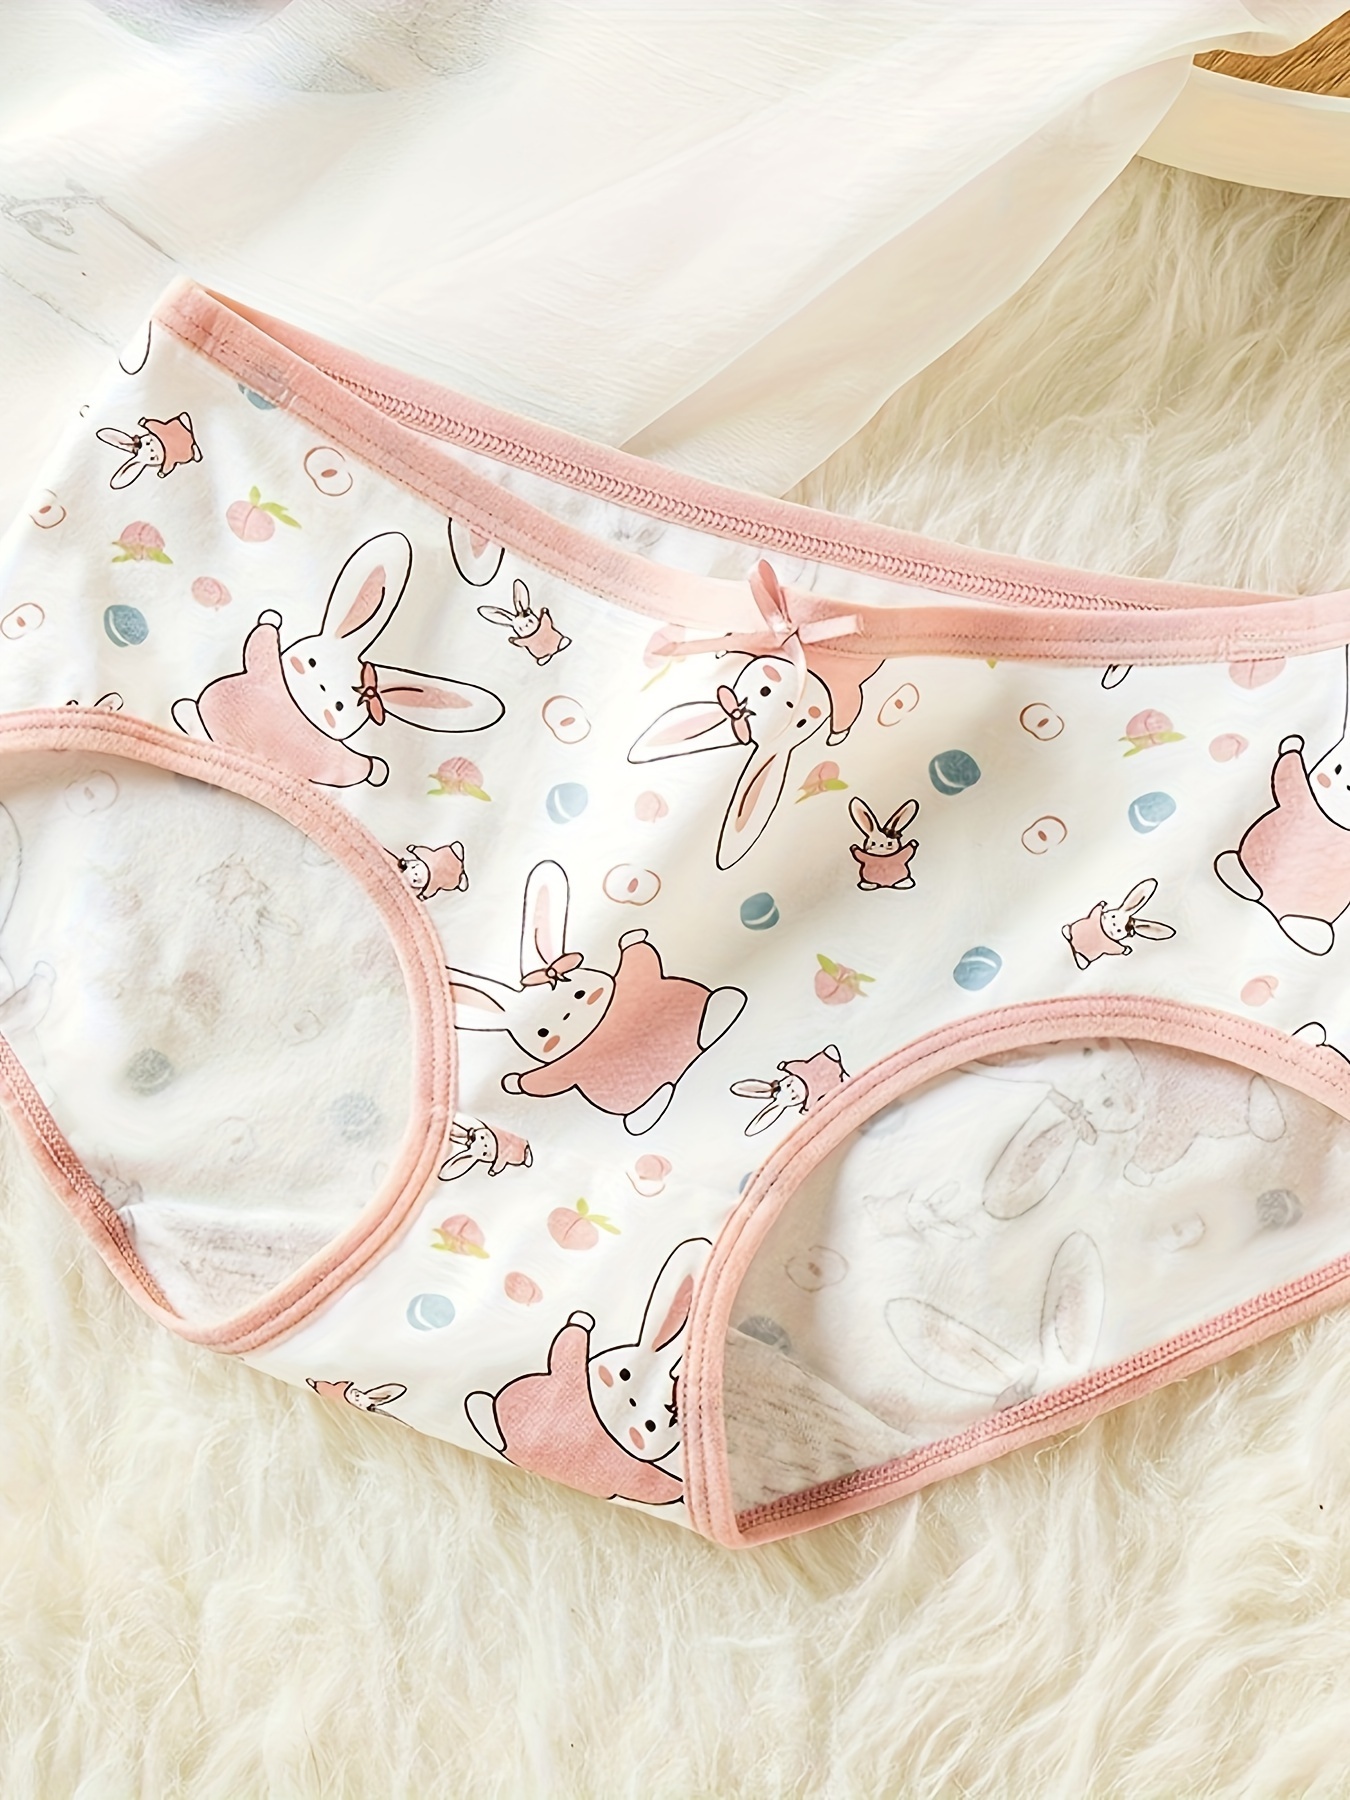 linqin Briefs Girls Seamless Underwear Bamboo Soft No Seam Underwear  Cartoon Rabbit Underwear for Women at  Women's Clothing store